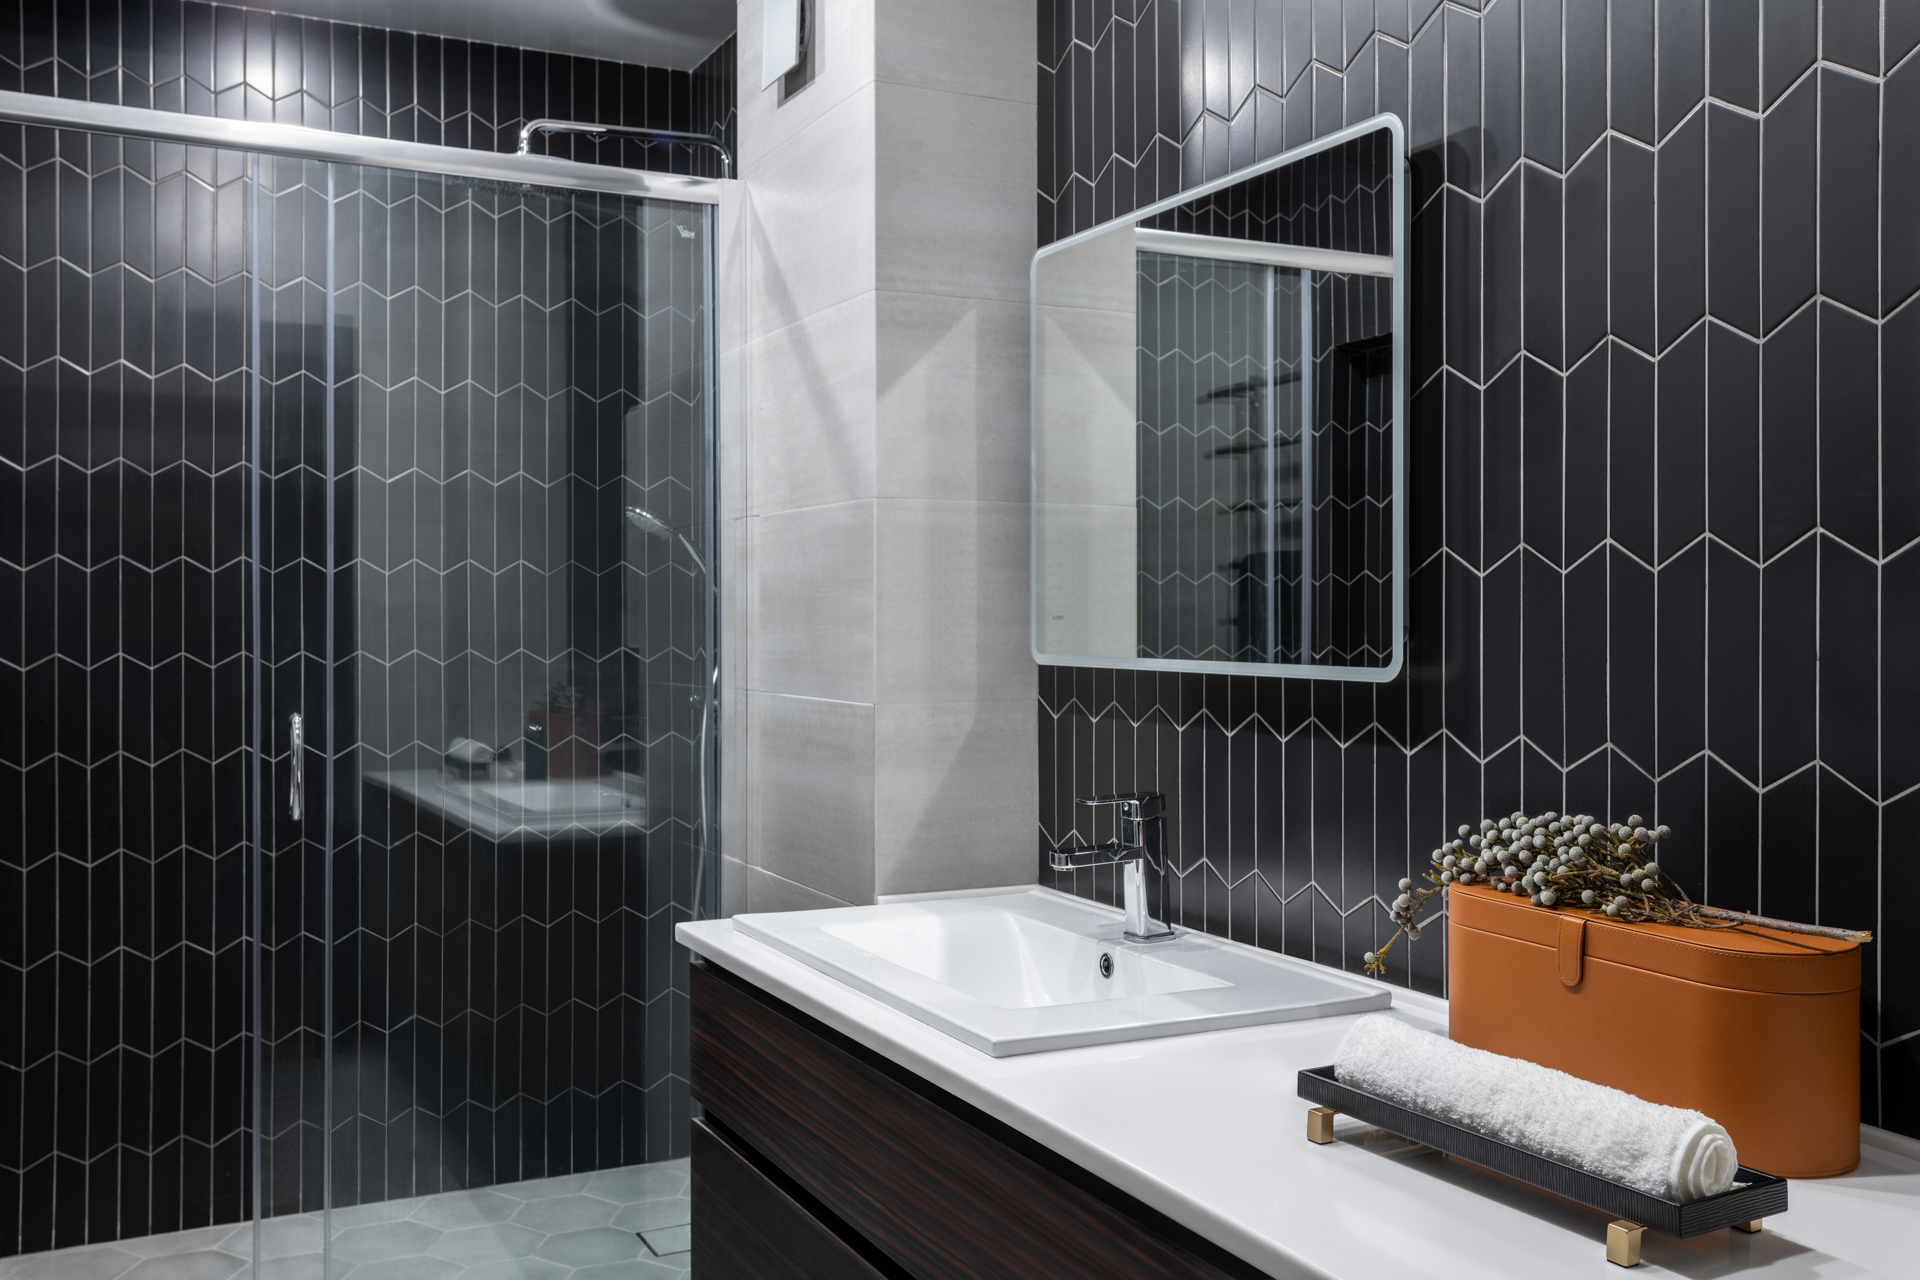 Phòng tắm là không gian duy nhất trong căn hộ không sử dụng gam màu xanh lam để trang trí, thay vào đó là gạch lát sàn và ốp tường tone màu trắng - đen sang trọng. Cửa kính trượt trong suốt giúp không gian này thông thoáng và đón sáng tốt hơn.